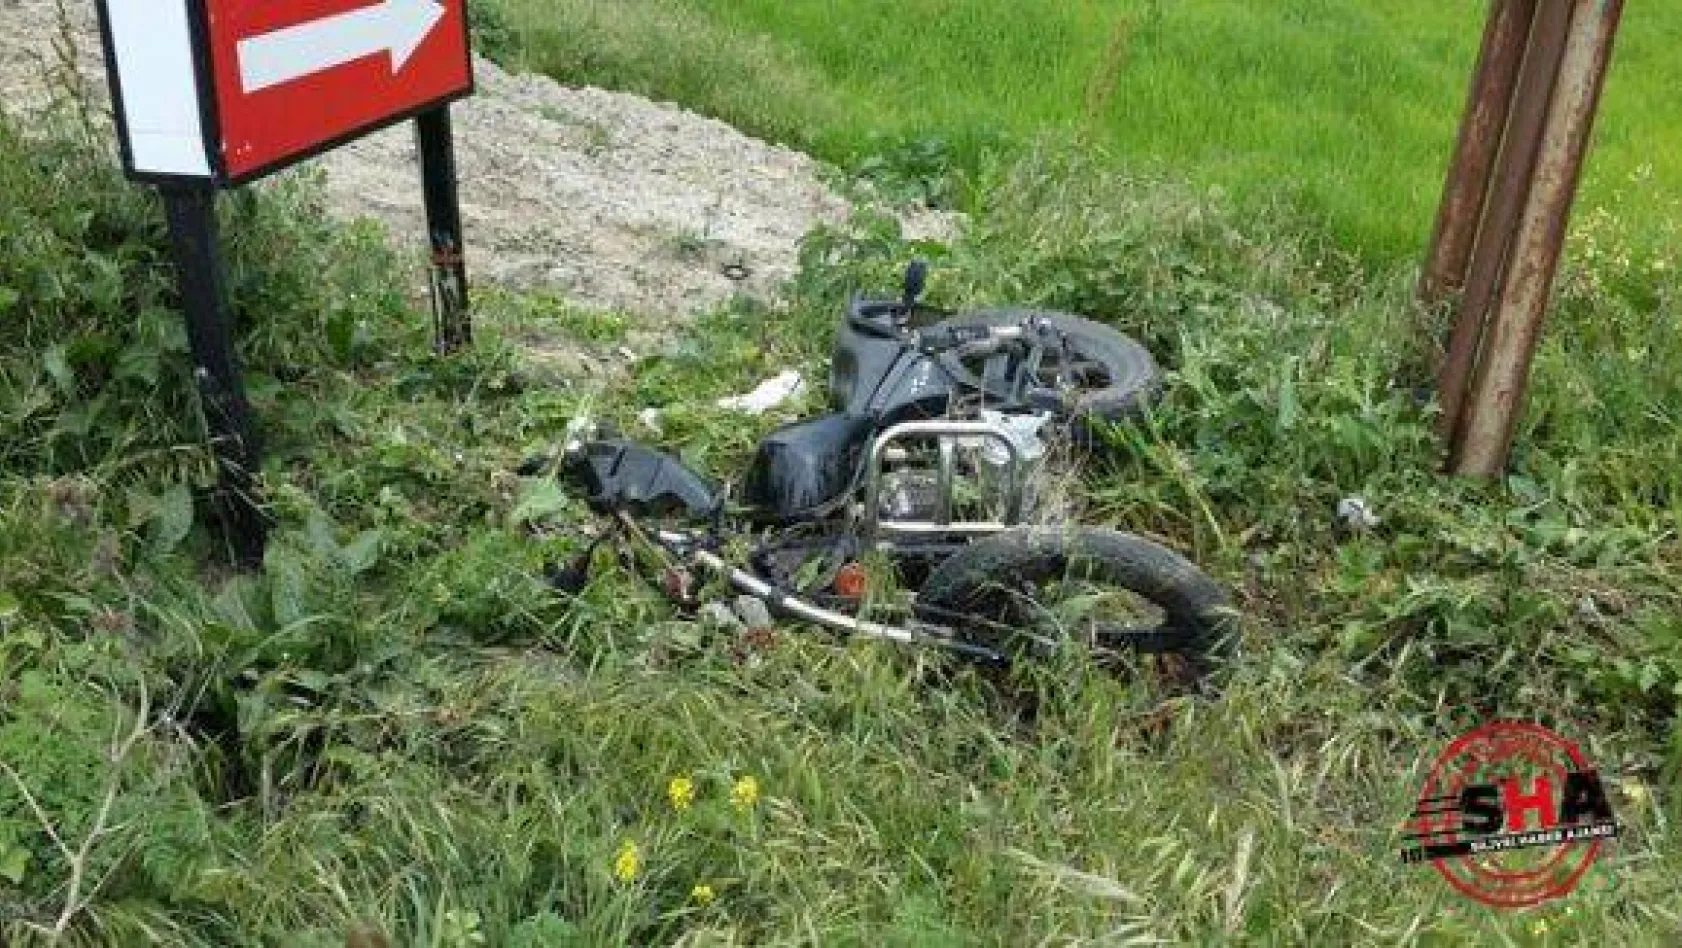 Alipaşa'da motosiklet kazası: 2 yaralı